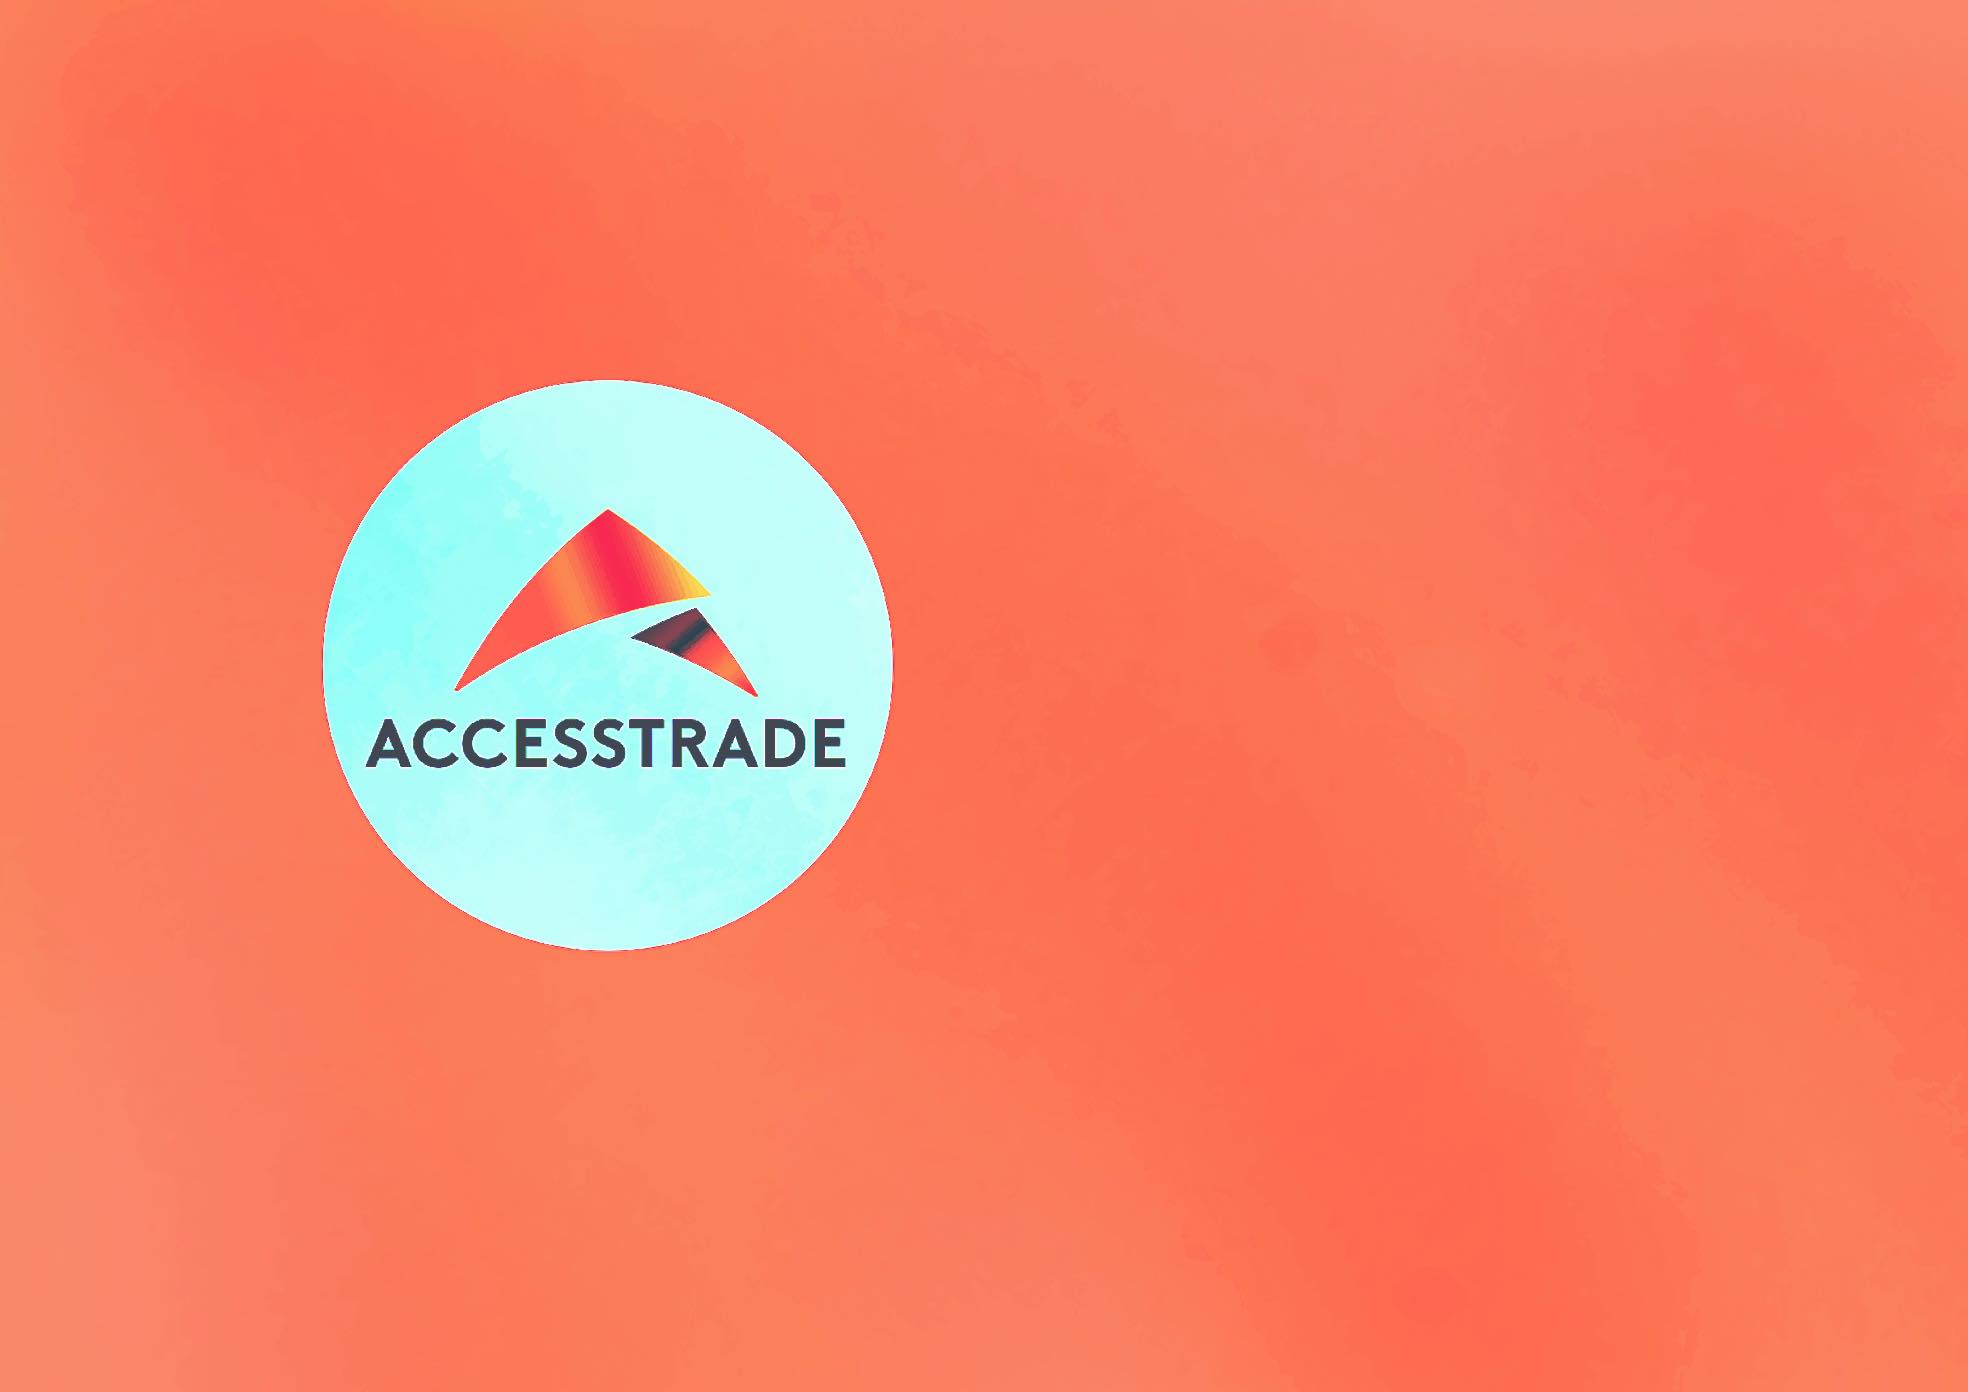 Accesstrade là gì? Hướng dẫn chi tiết từng bước kiếm tiền từ Accesstrade